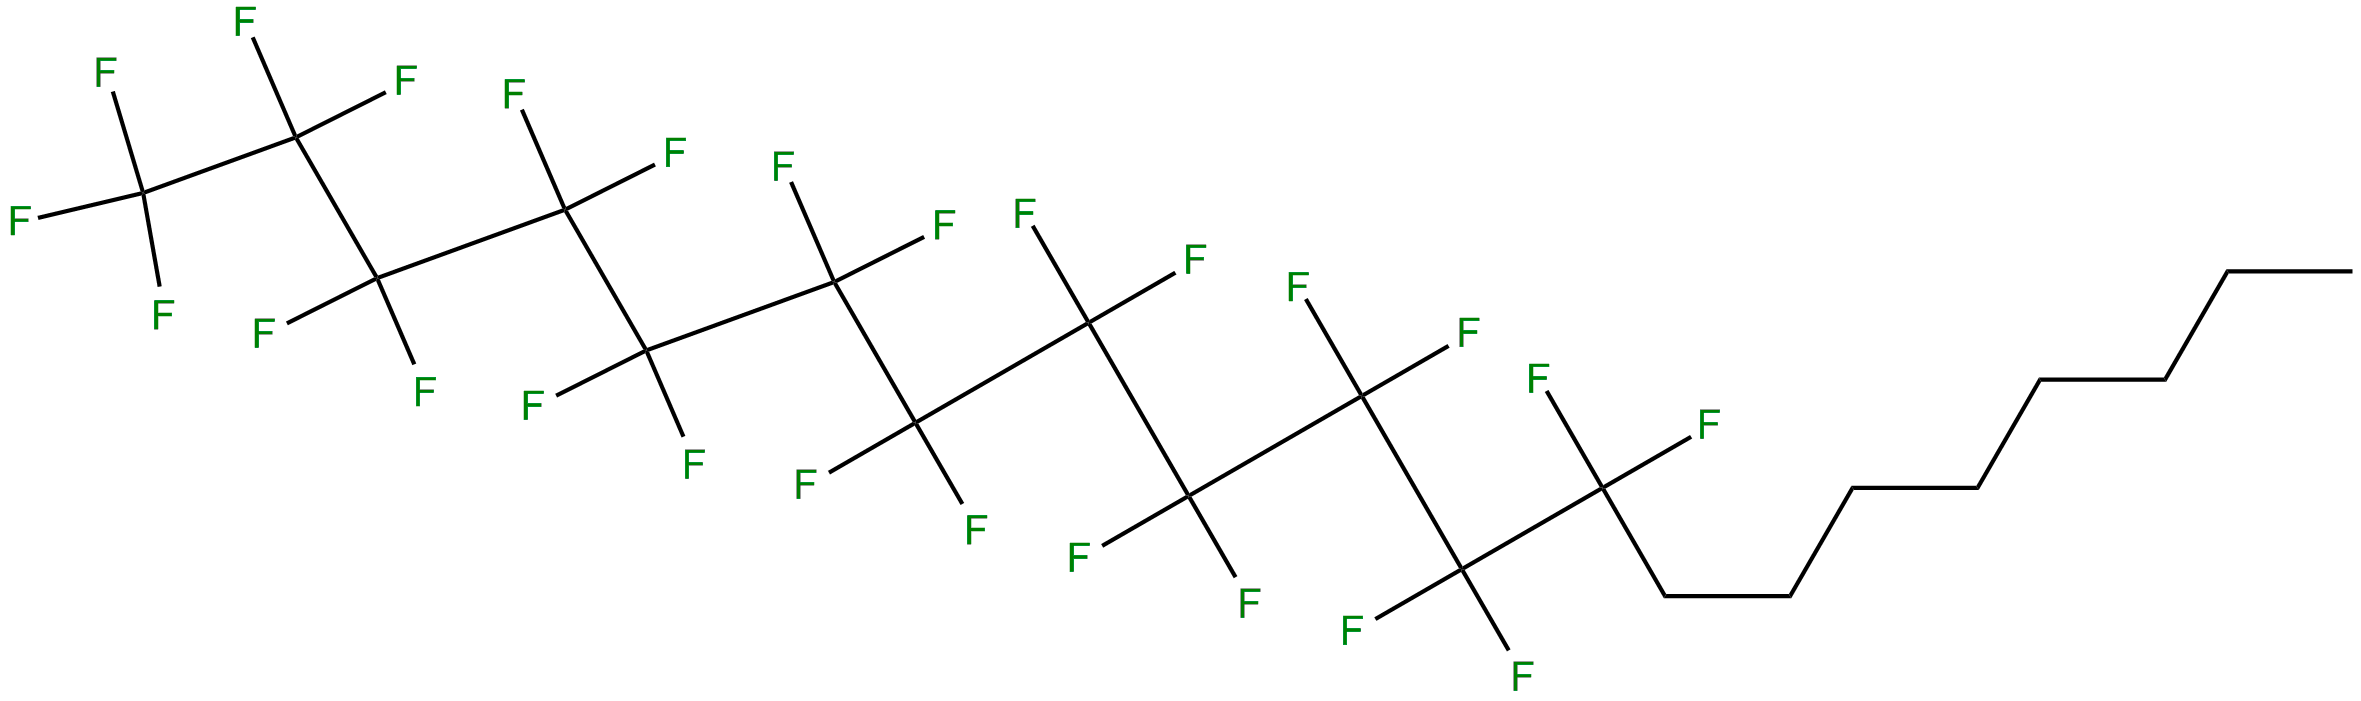 Image of 1,1,1,2,2,3,3,4,4,5,5,6,6,7,7,8,8,9,9,10,10,11,11,12,12-pentacosafluoroeicosane